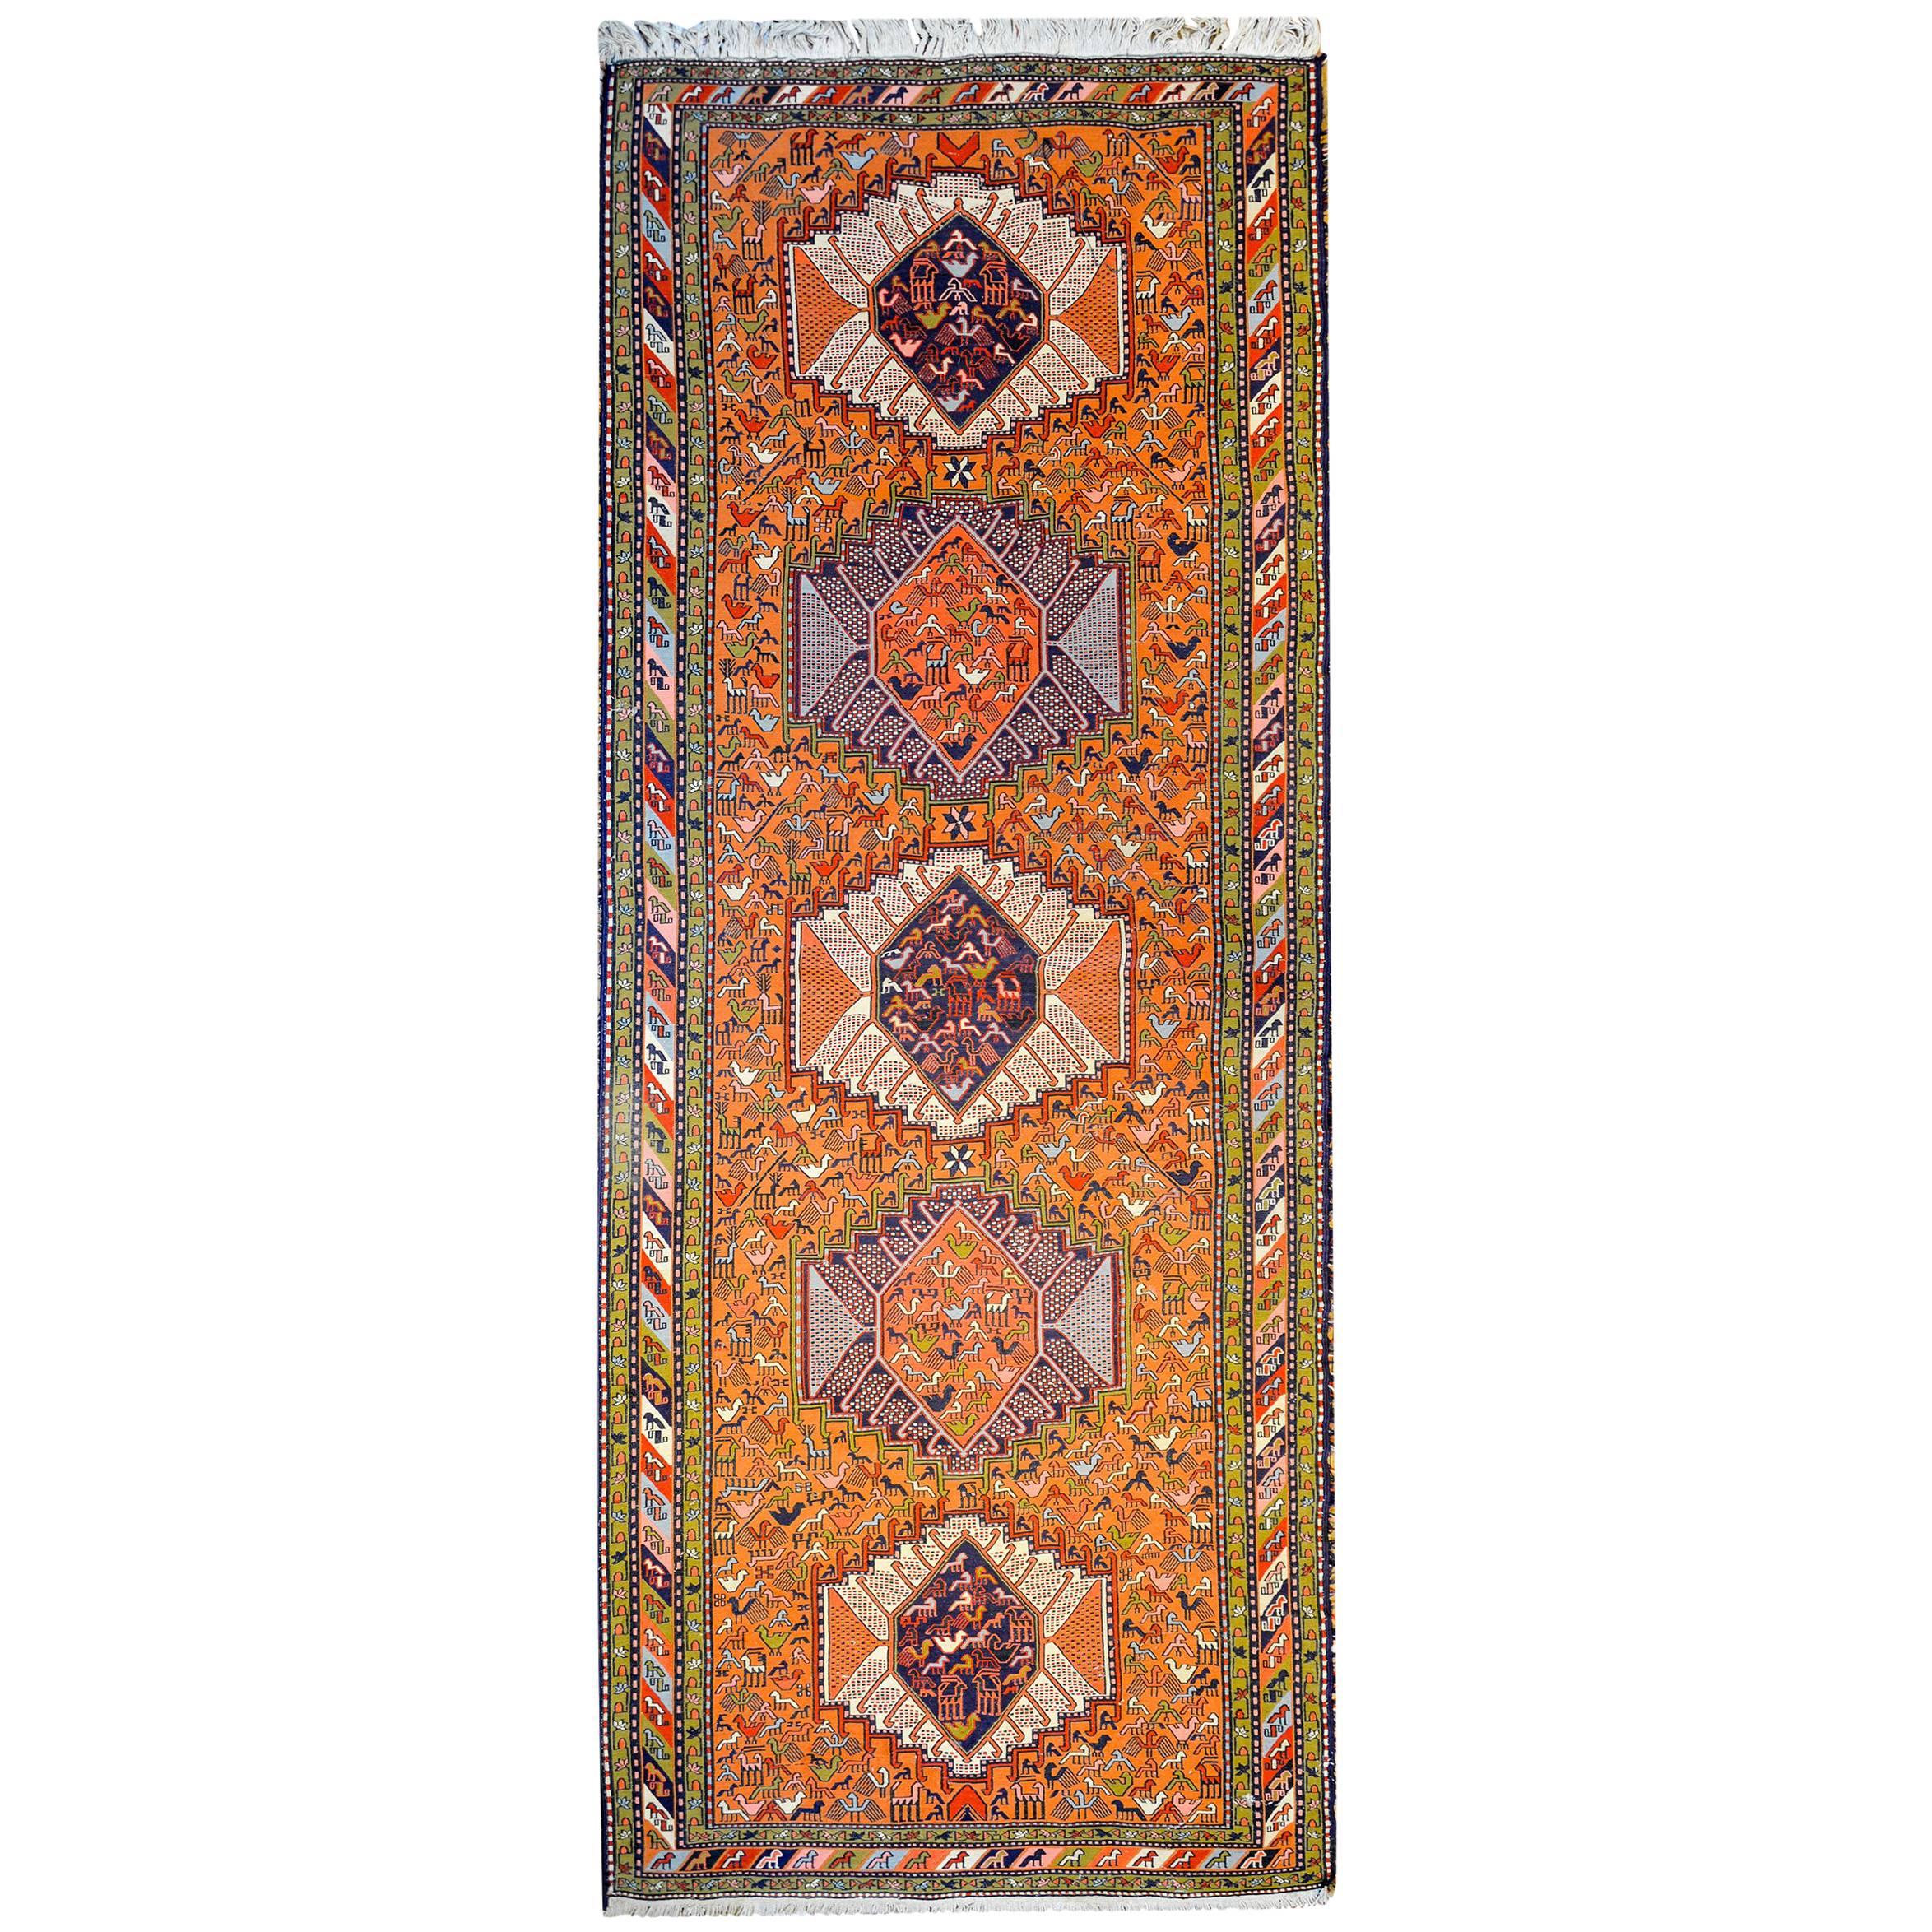 Skurriler Sumak-Teppich aus dem frühen 20. Jahrhundert